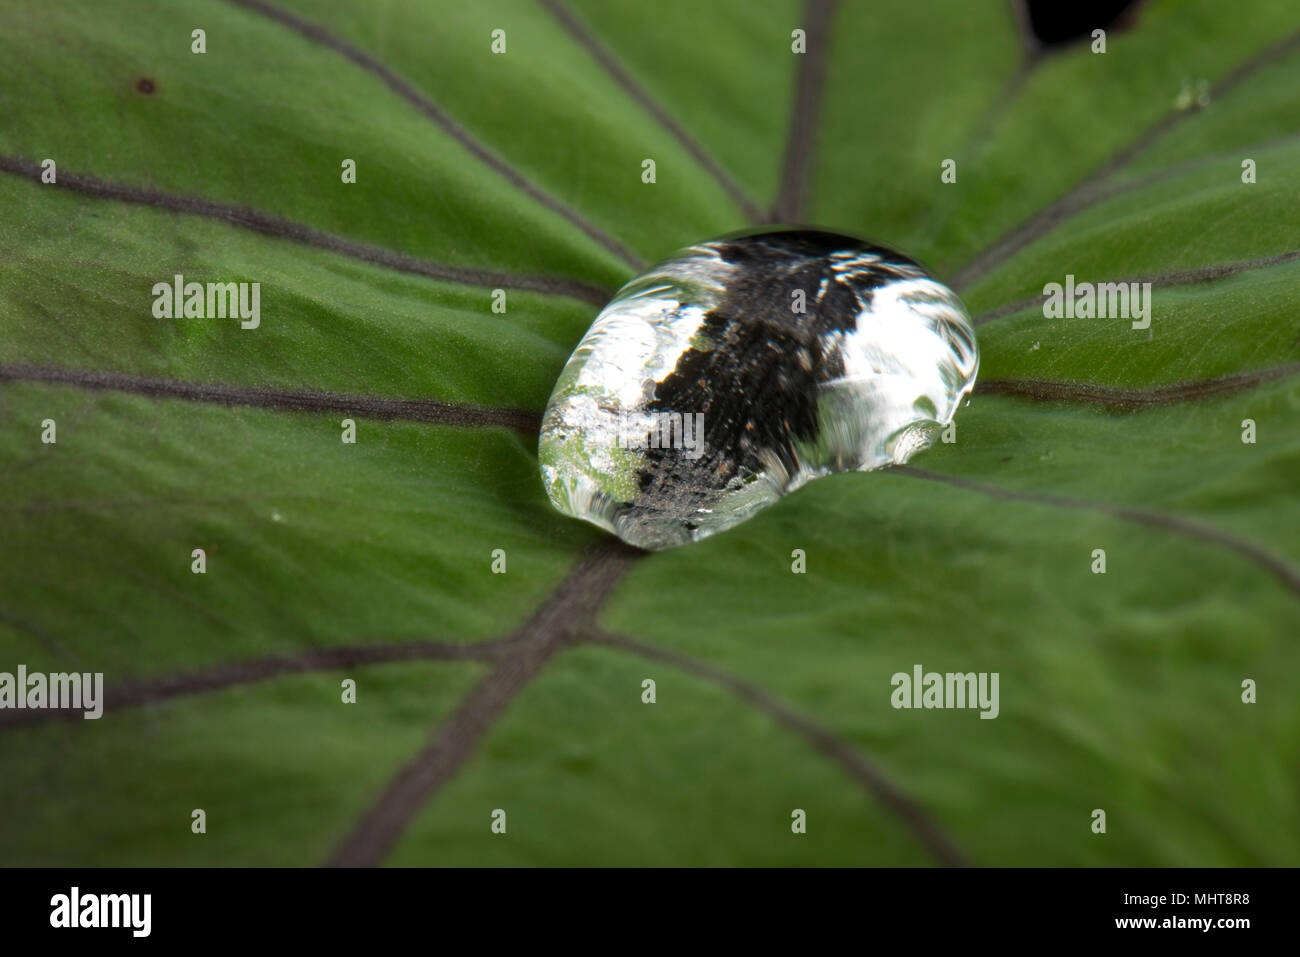 Gota de agua grande sentado y repelidos por la superficie cerosa de una hoja de taro, Colocasia esculenta Foto de stock